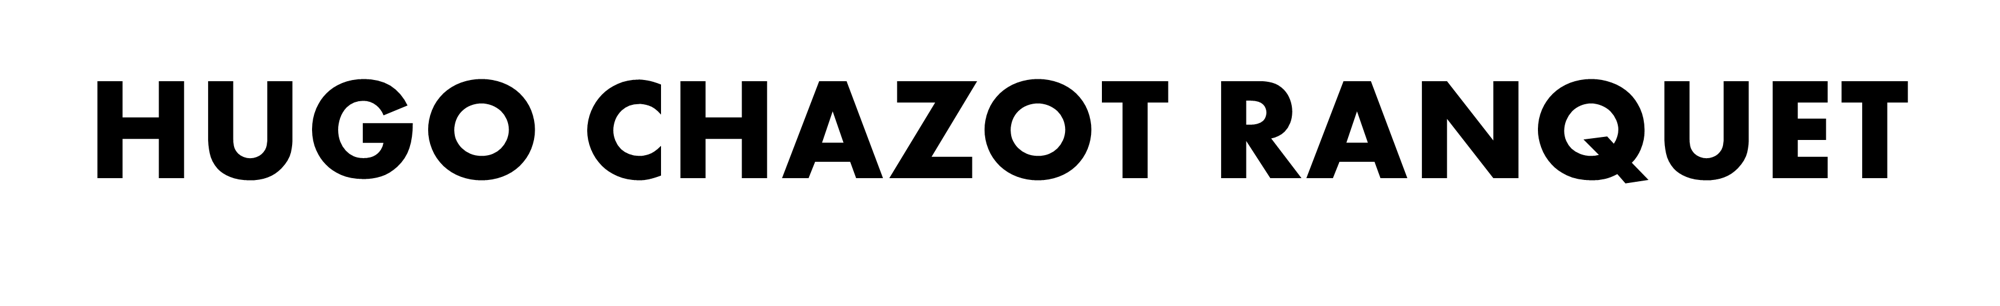 Logo HCR